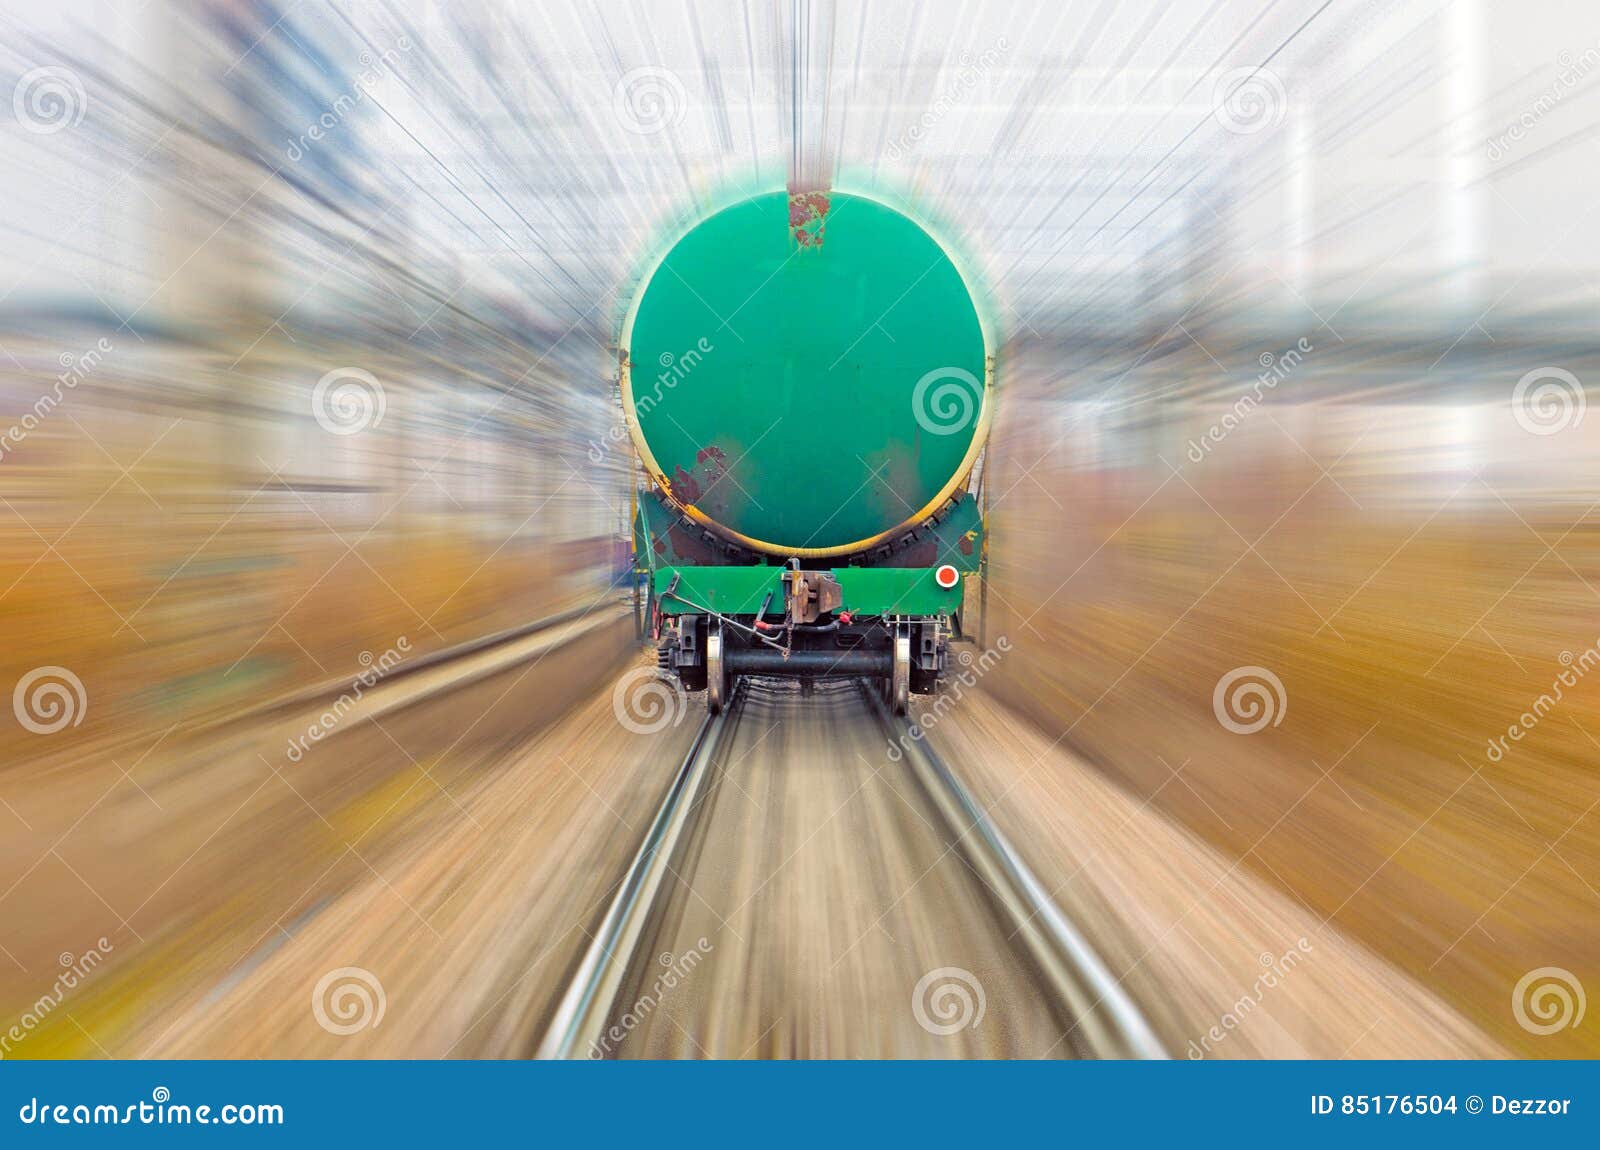 Грузовой поезд Измайлово. Мяч неподвижно лежавший на полу вагона движущегося поезда. Столик в вагоне. Звук движущегося поезда